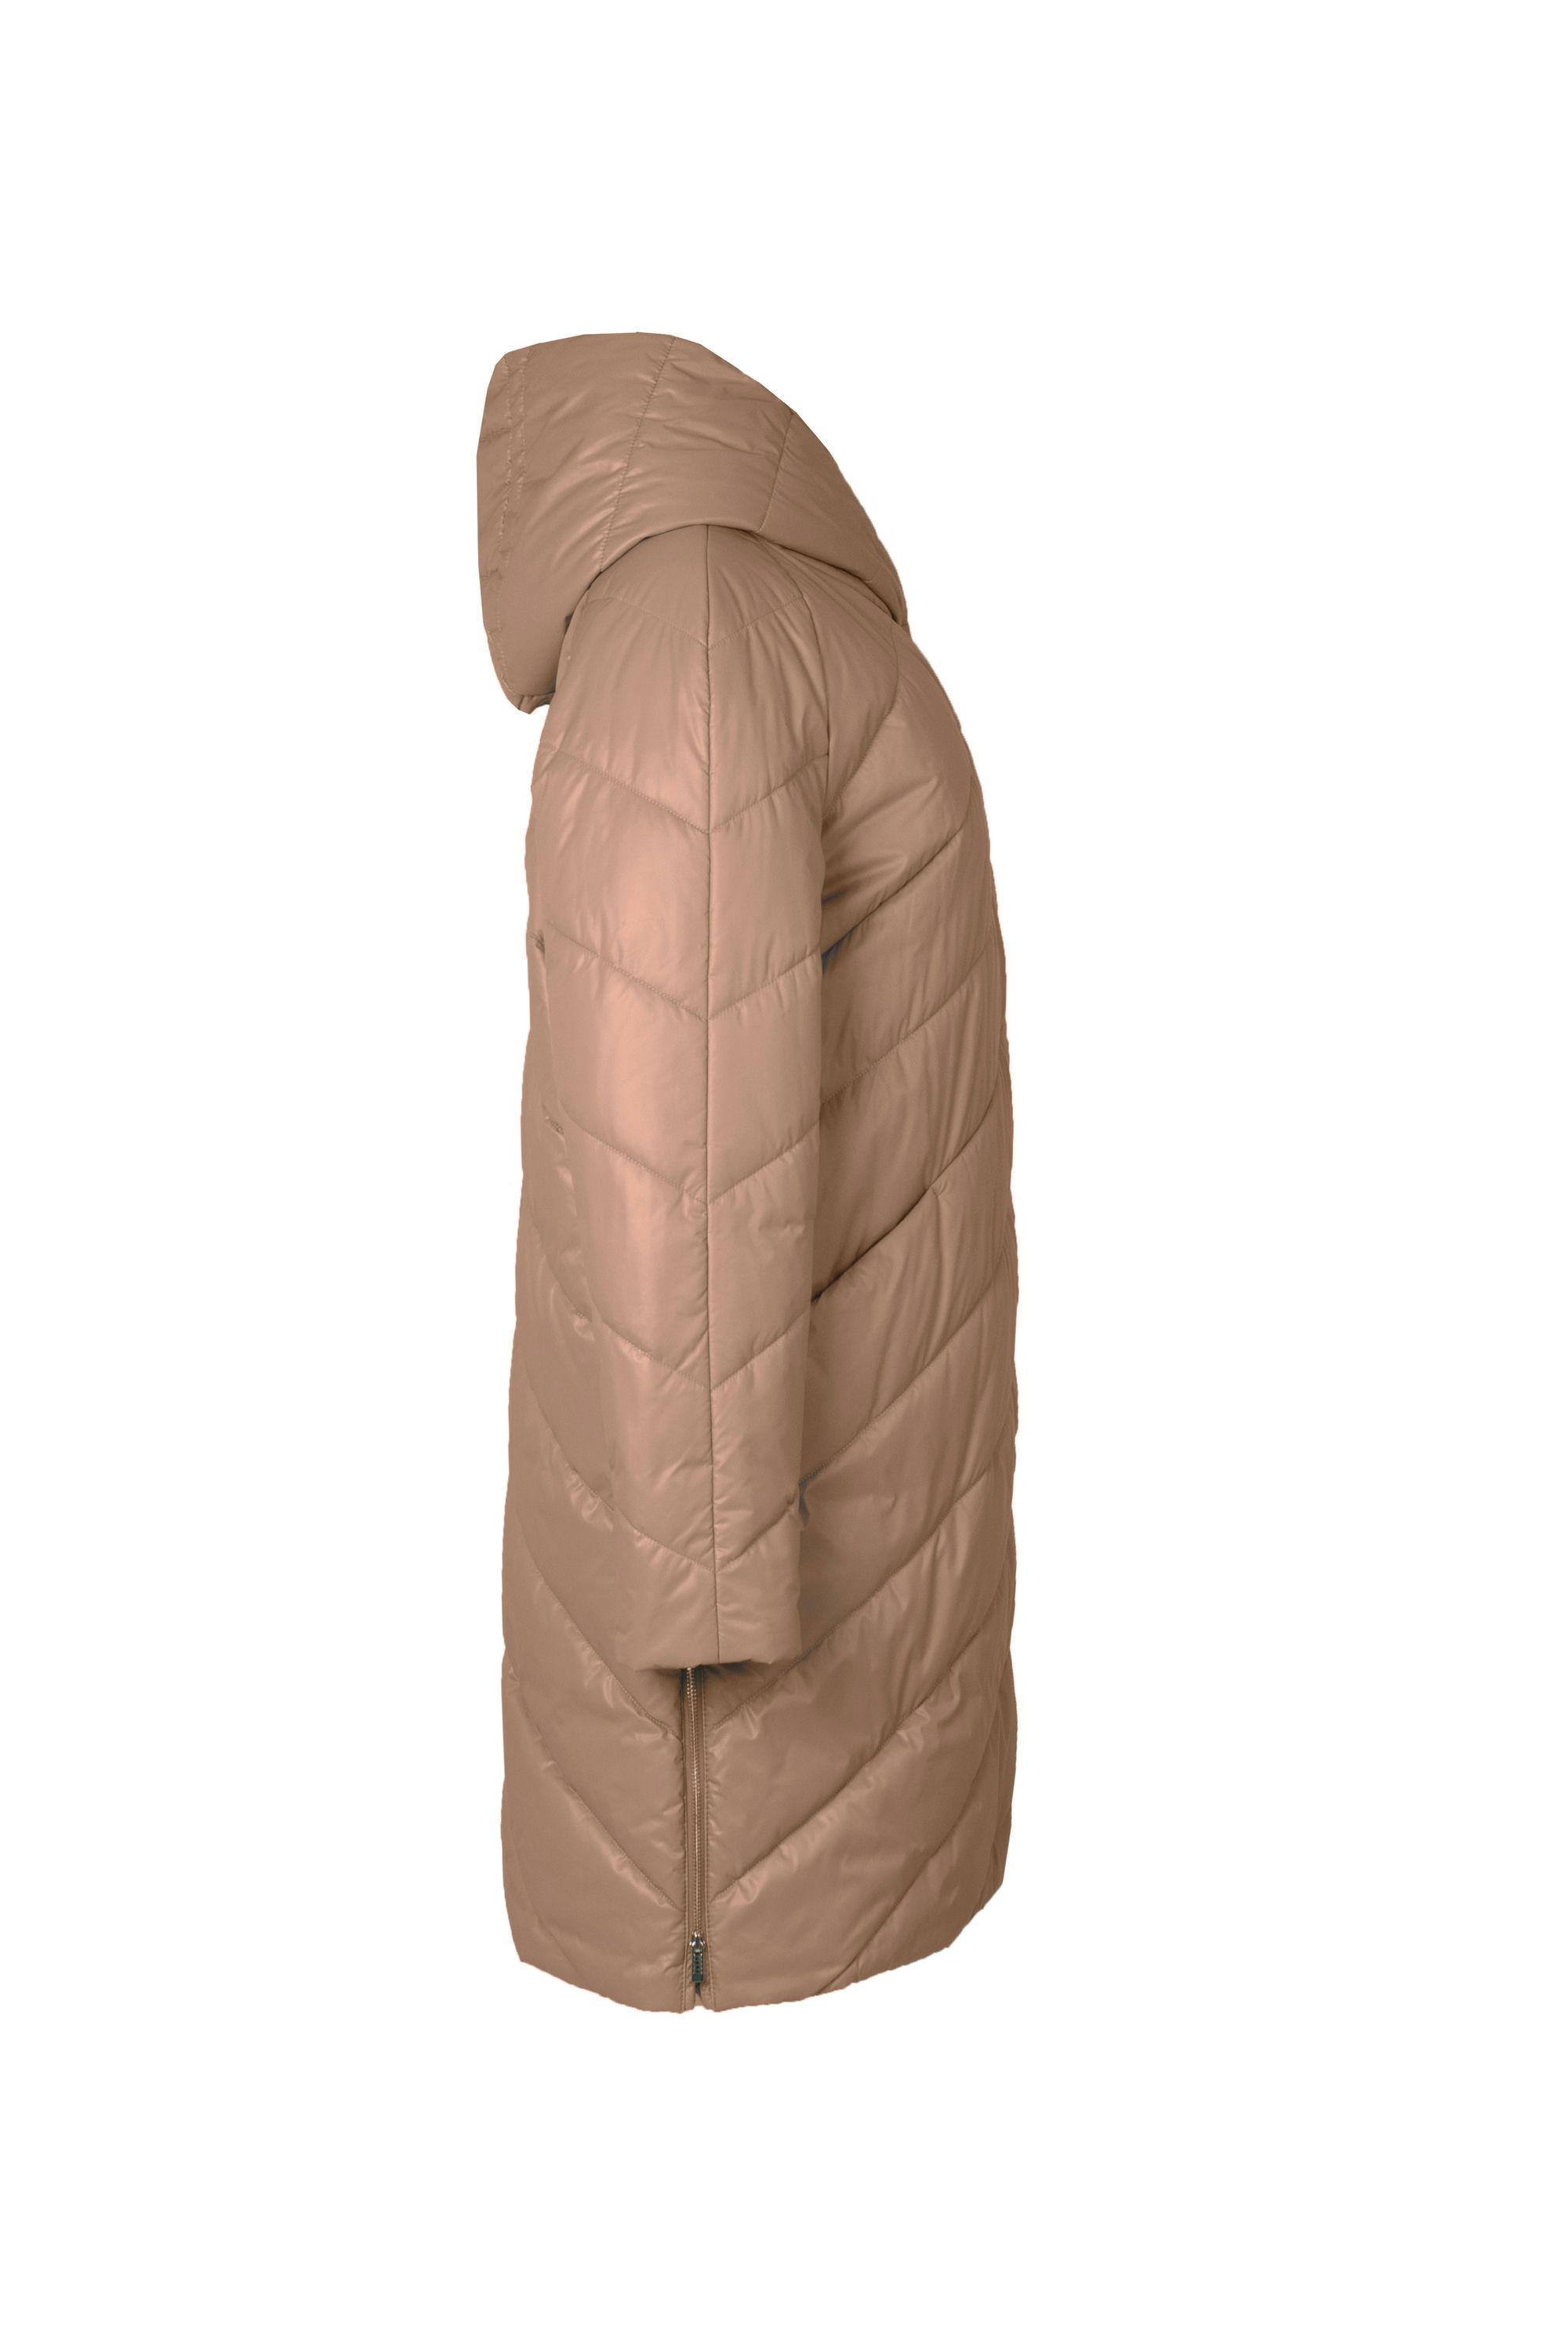 Пальто женское плащевое утепленное 5-12649-1. Фото 2.